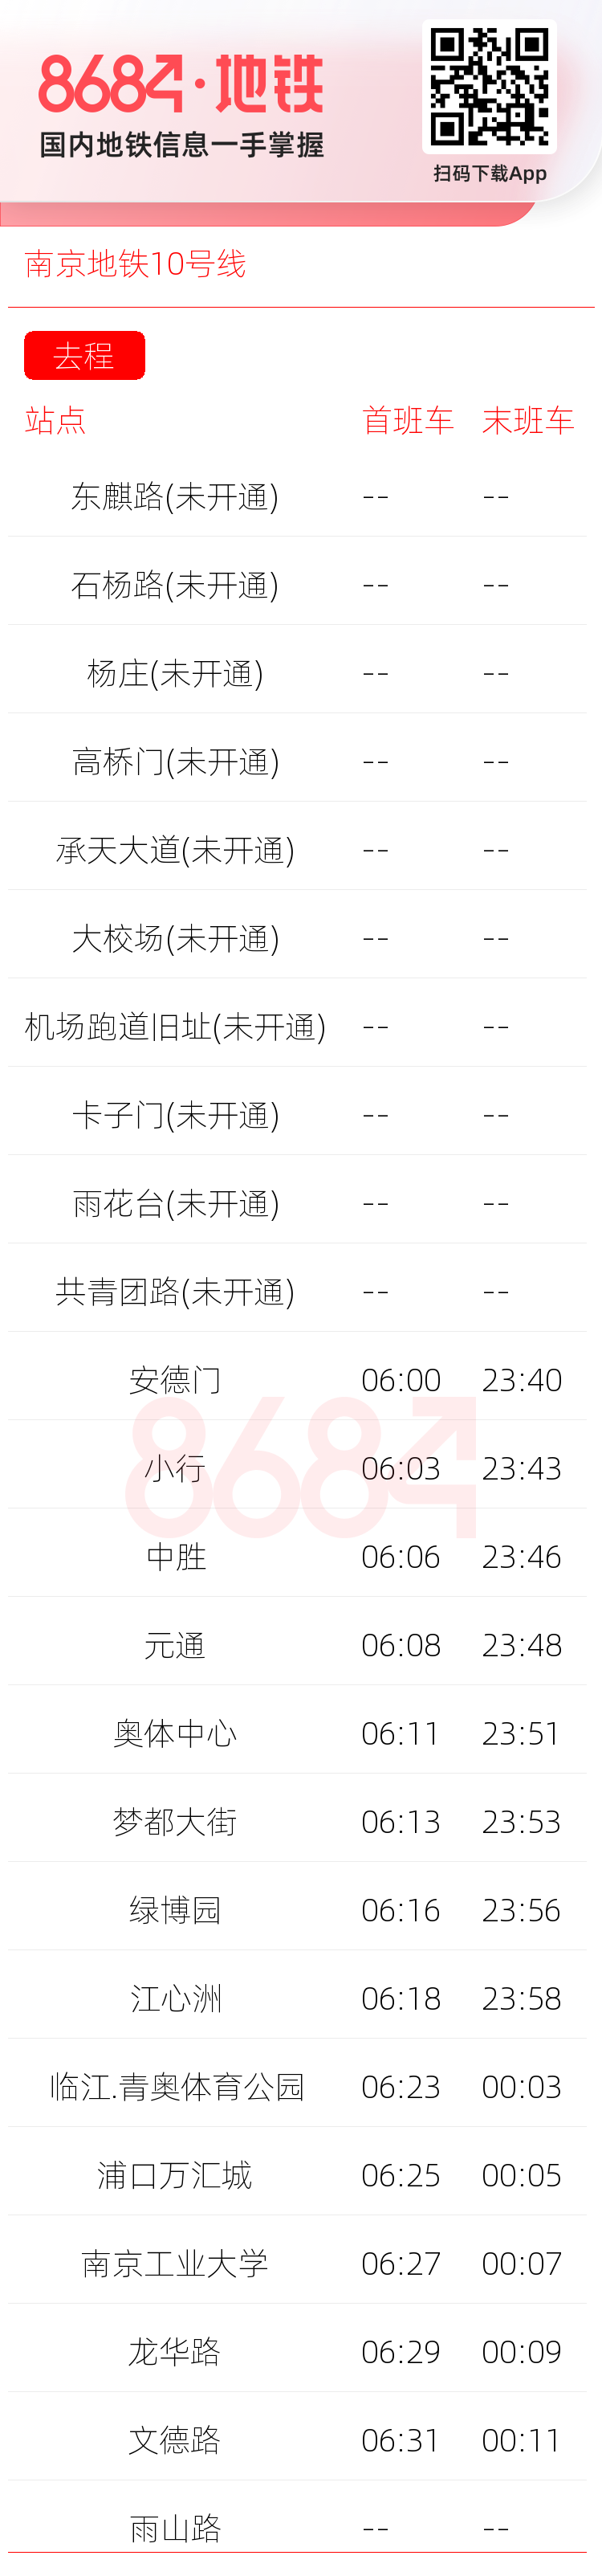 南京地铁10号线运营时间表